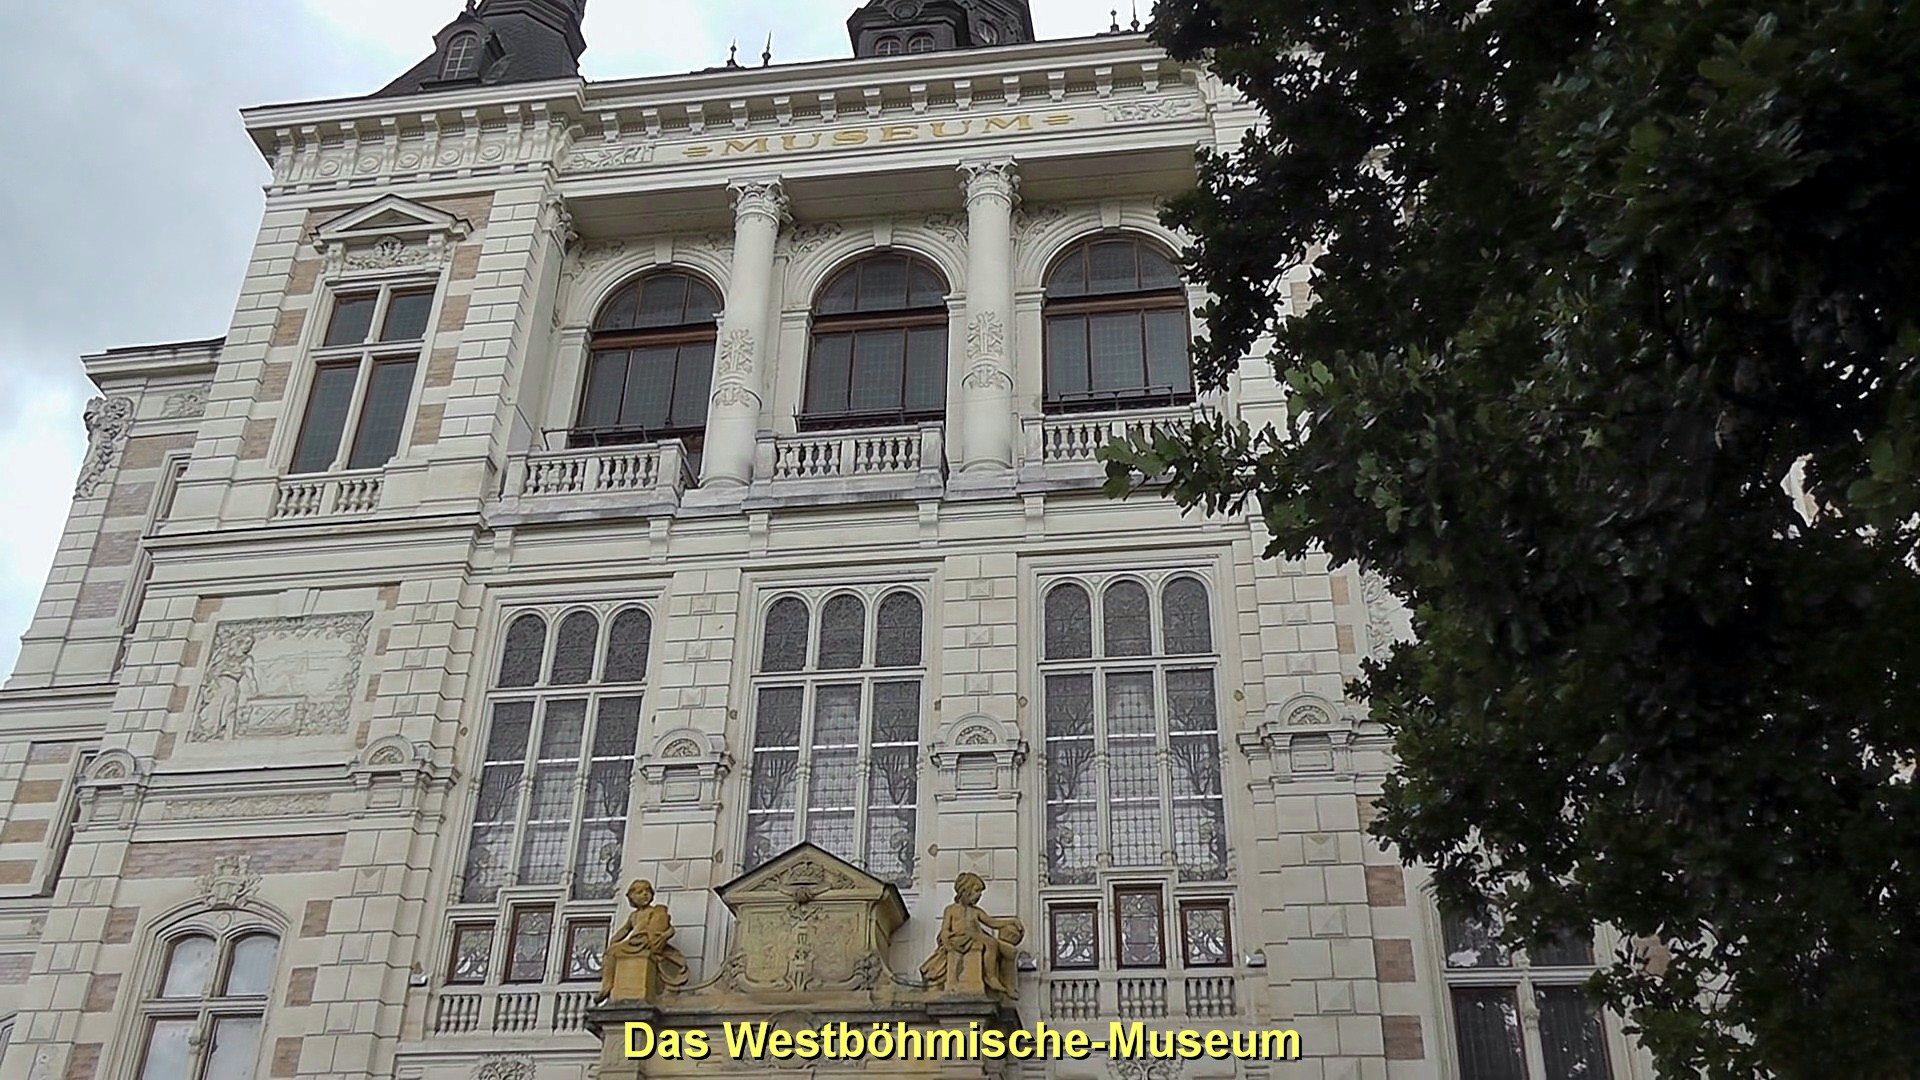 Pilsen Das Westbhmische Museum